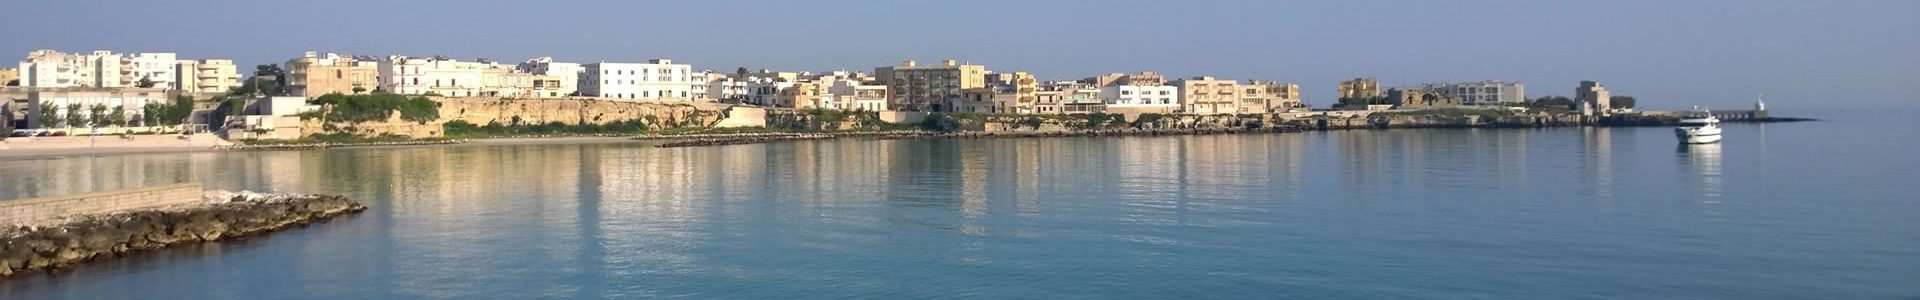 Appartamento 19 per vacanze ad Otranto